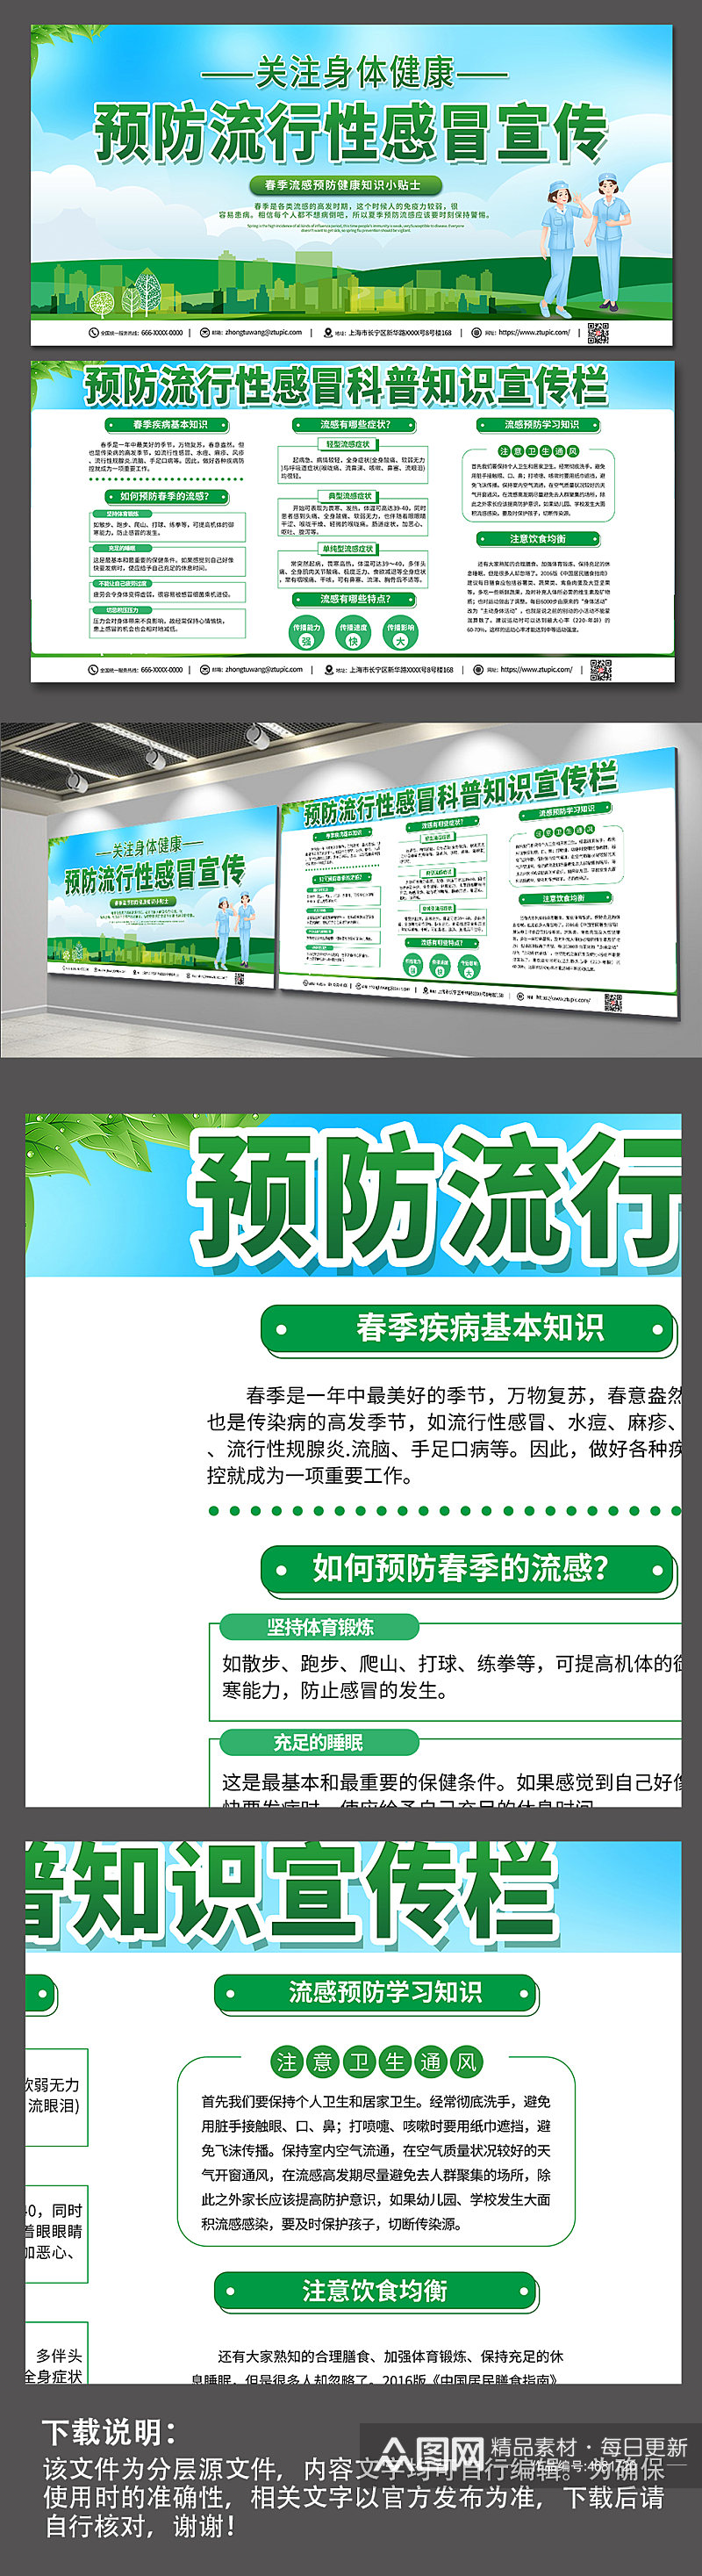 绿色环保预防流感知识宣传双面展板素材